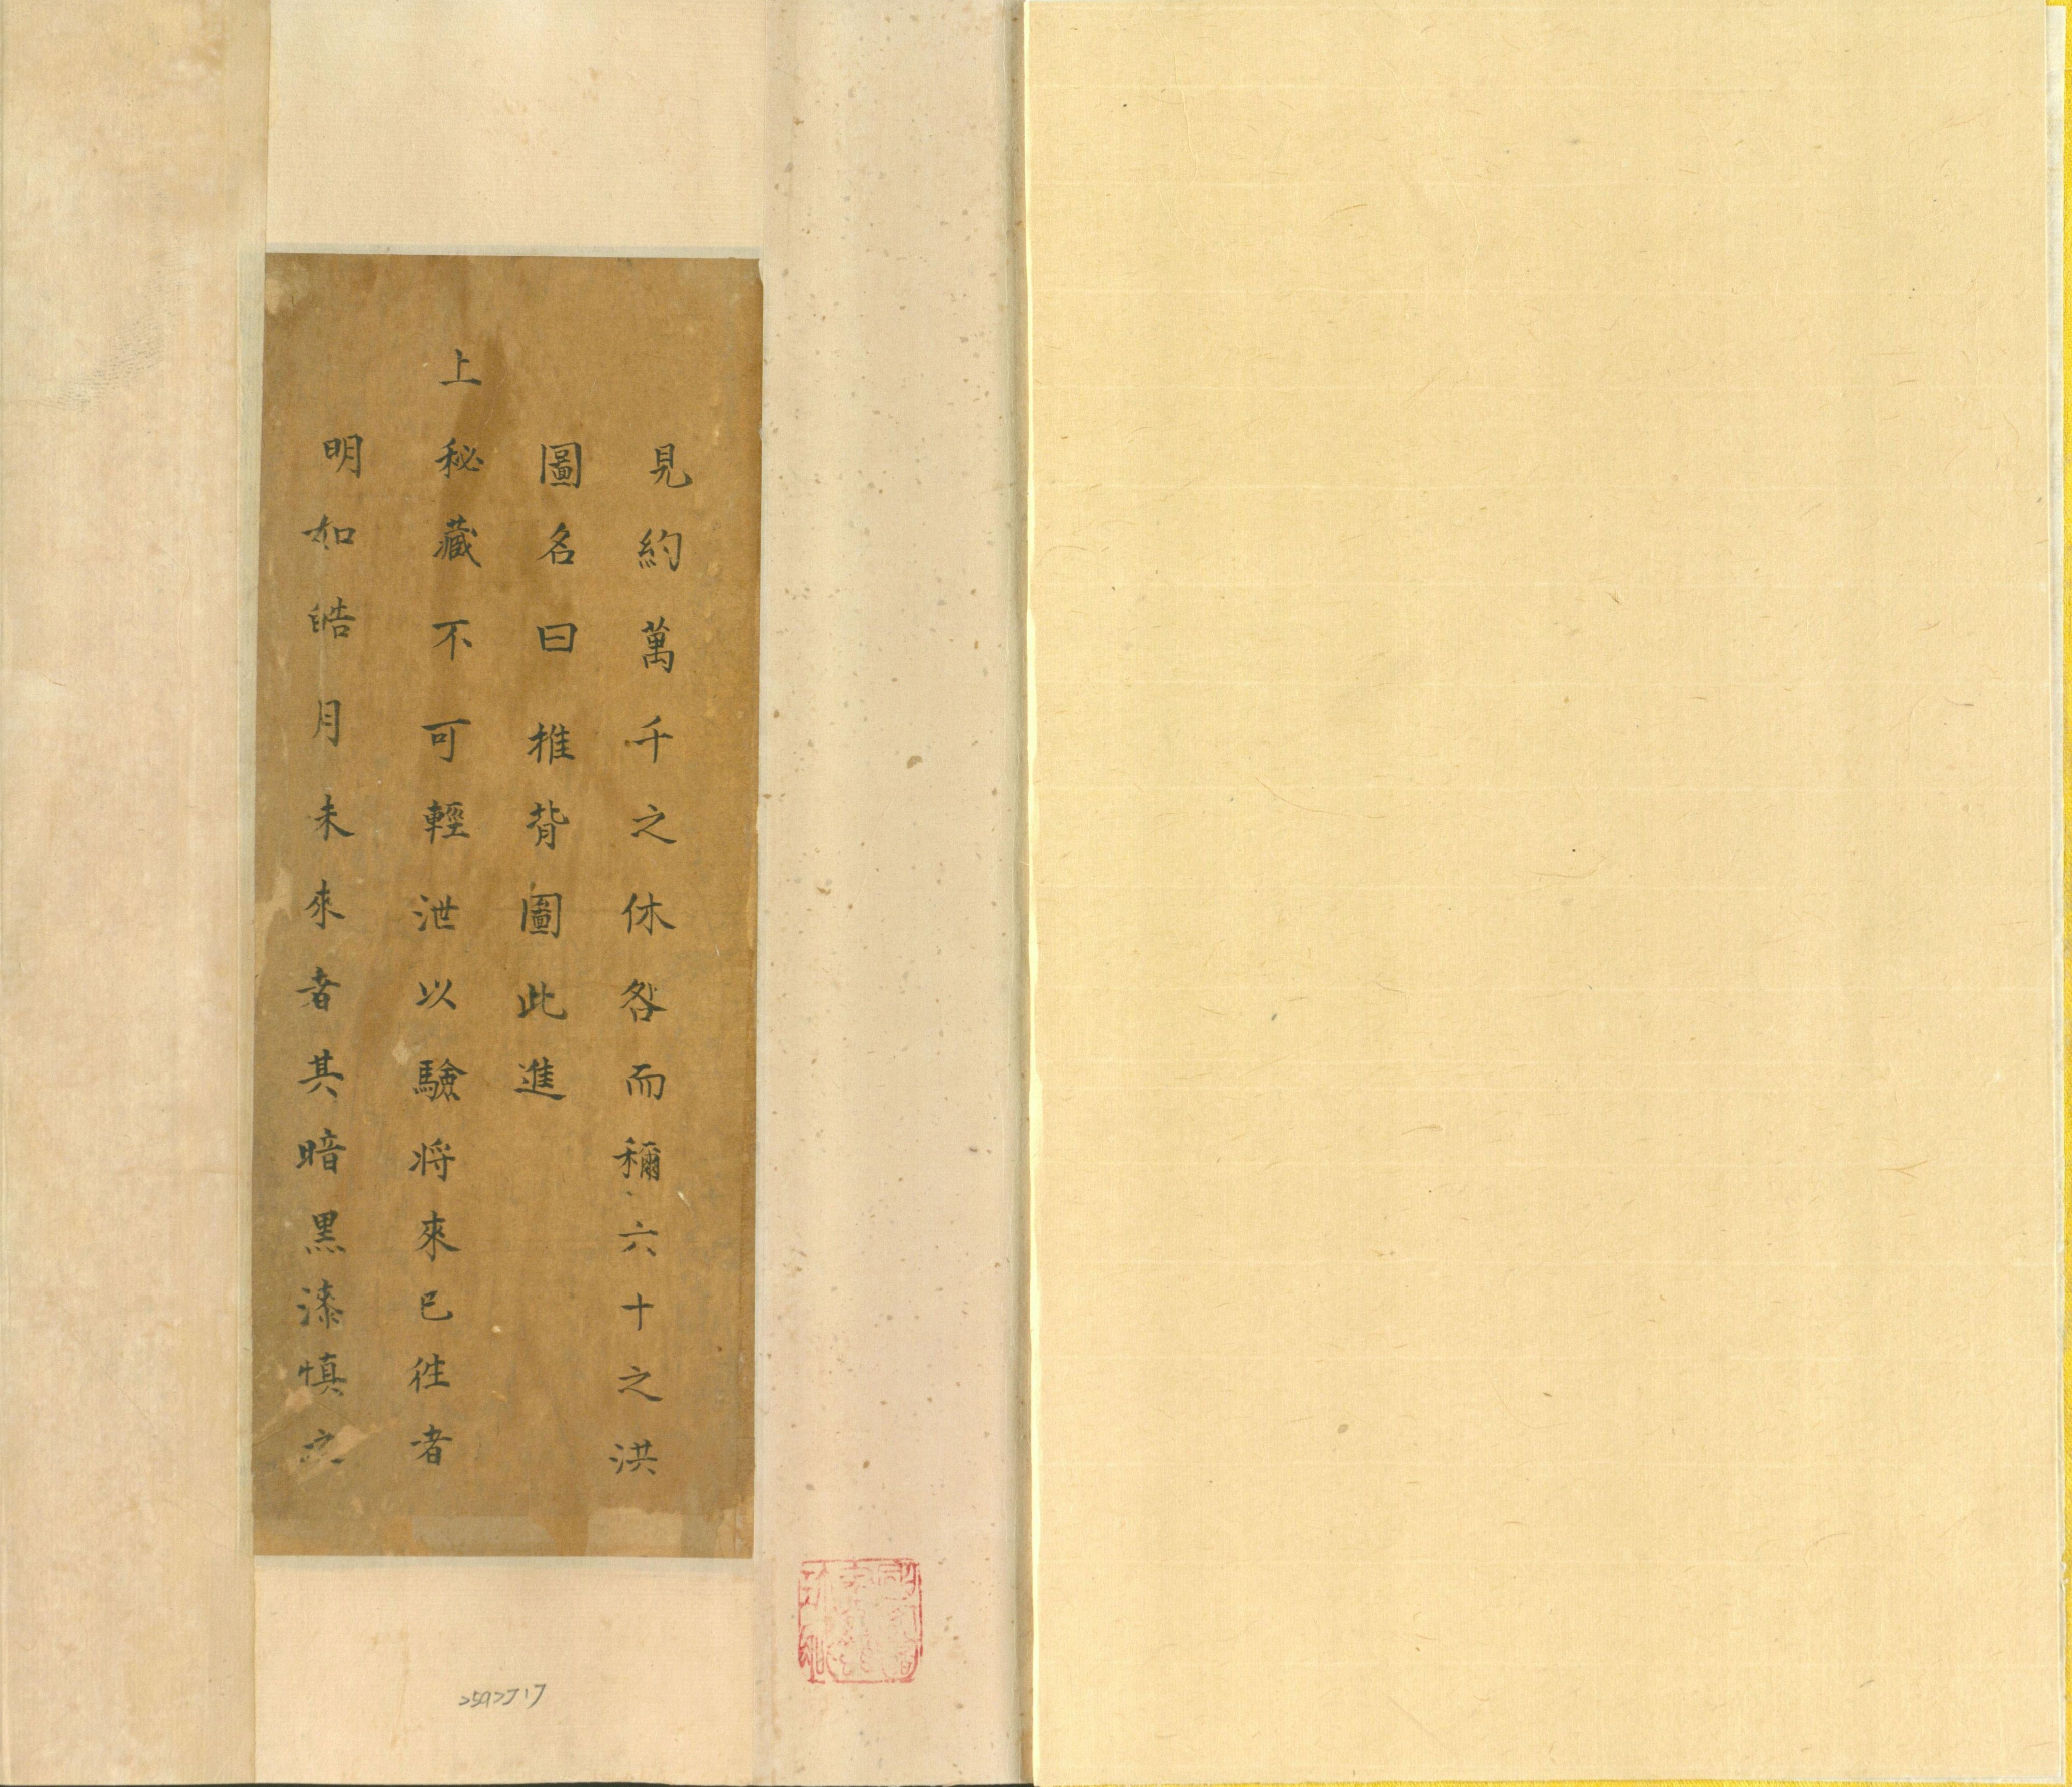 推背图-清抄彩绘本-现藏于台北国家图书馆